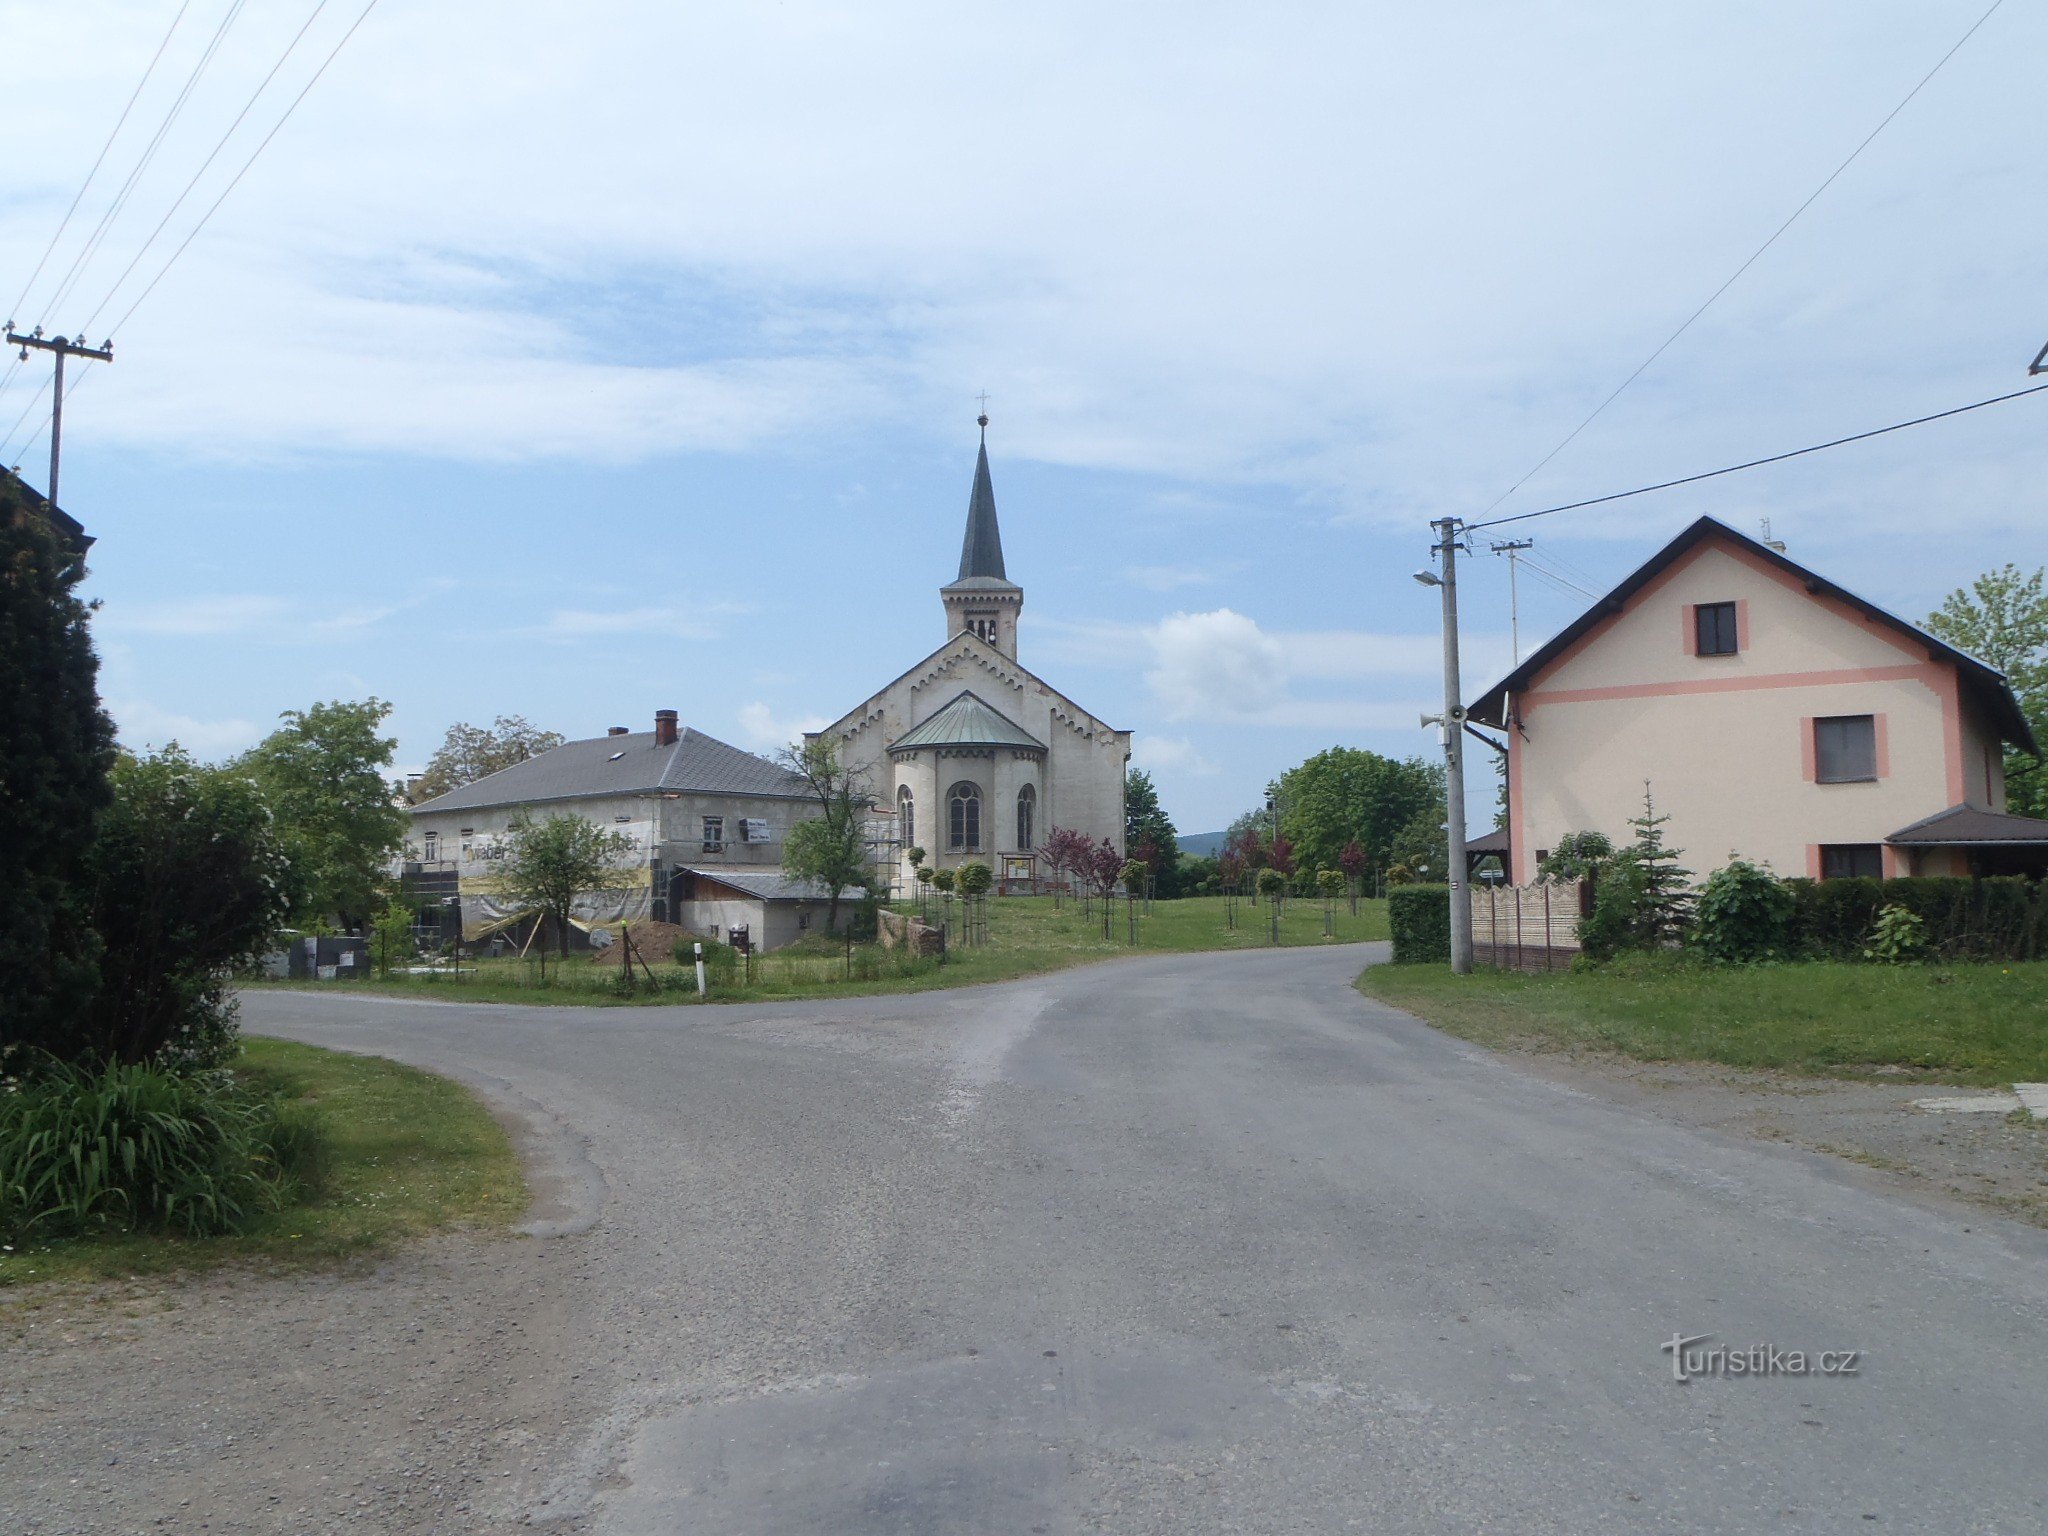 Crkva iz daljine